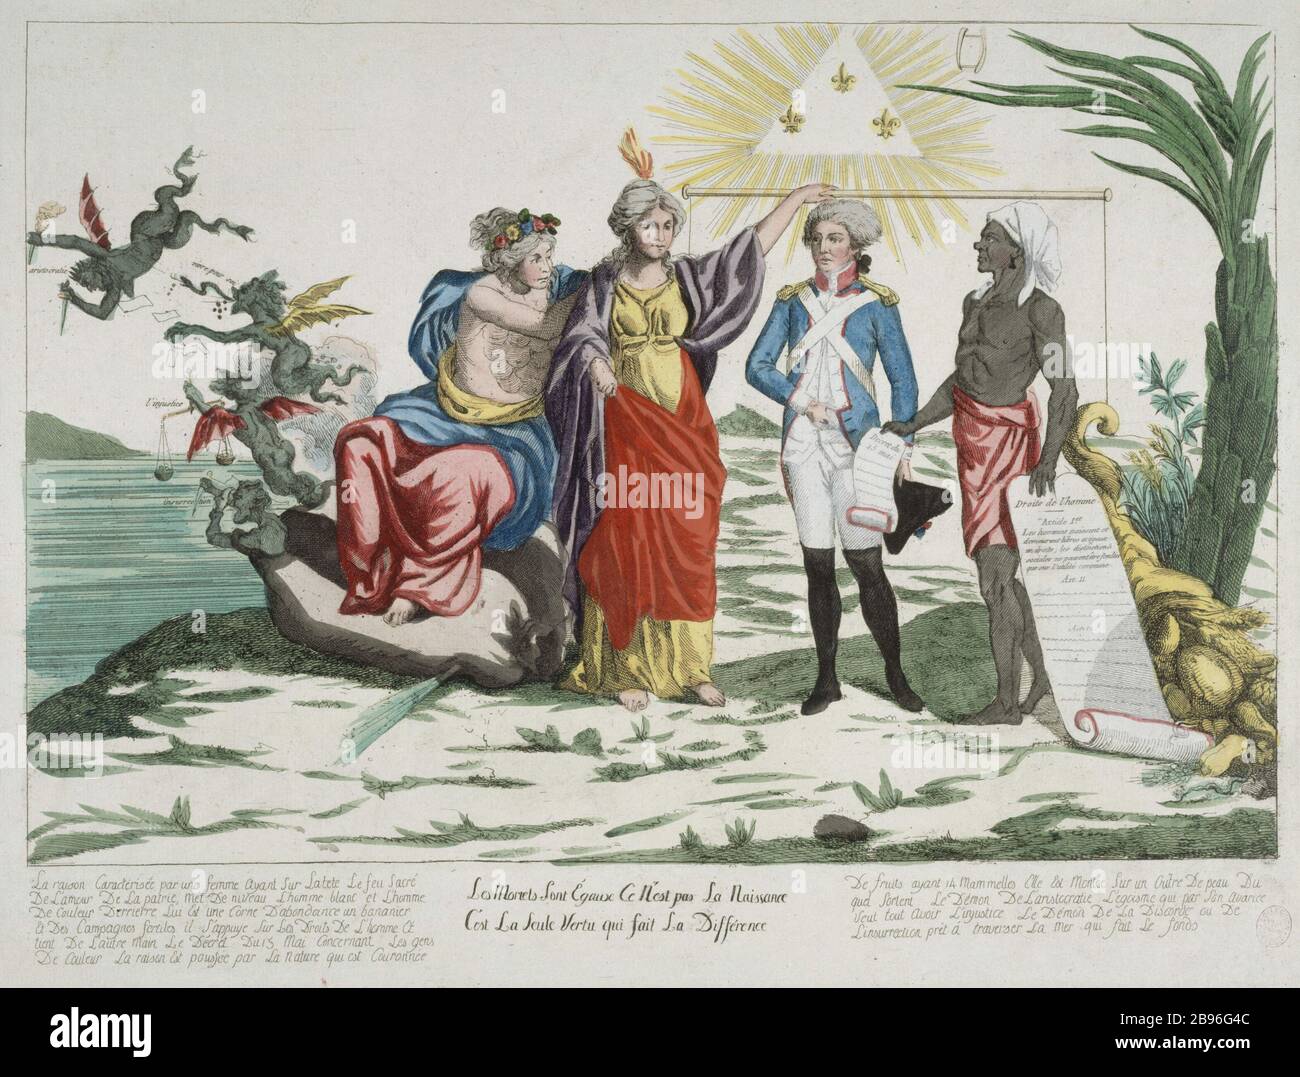 (ALLEGORIE) LA MORTE È UGUALE, 1791 ANONYME. "Allégories" les mortels sont égaux, 1791". Eau-forte coloriée. Parigi, musée Carnavalet. Foto Stock